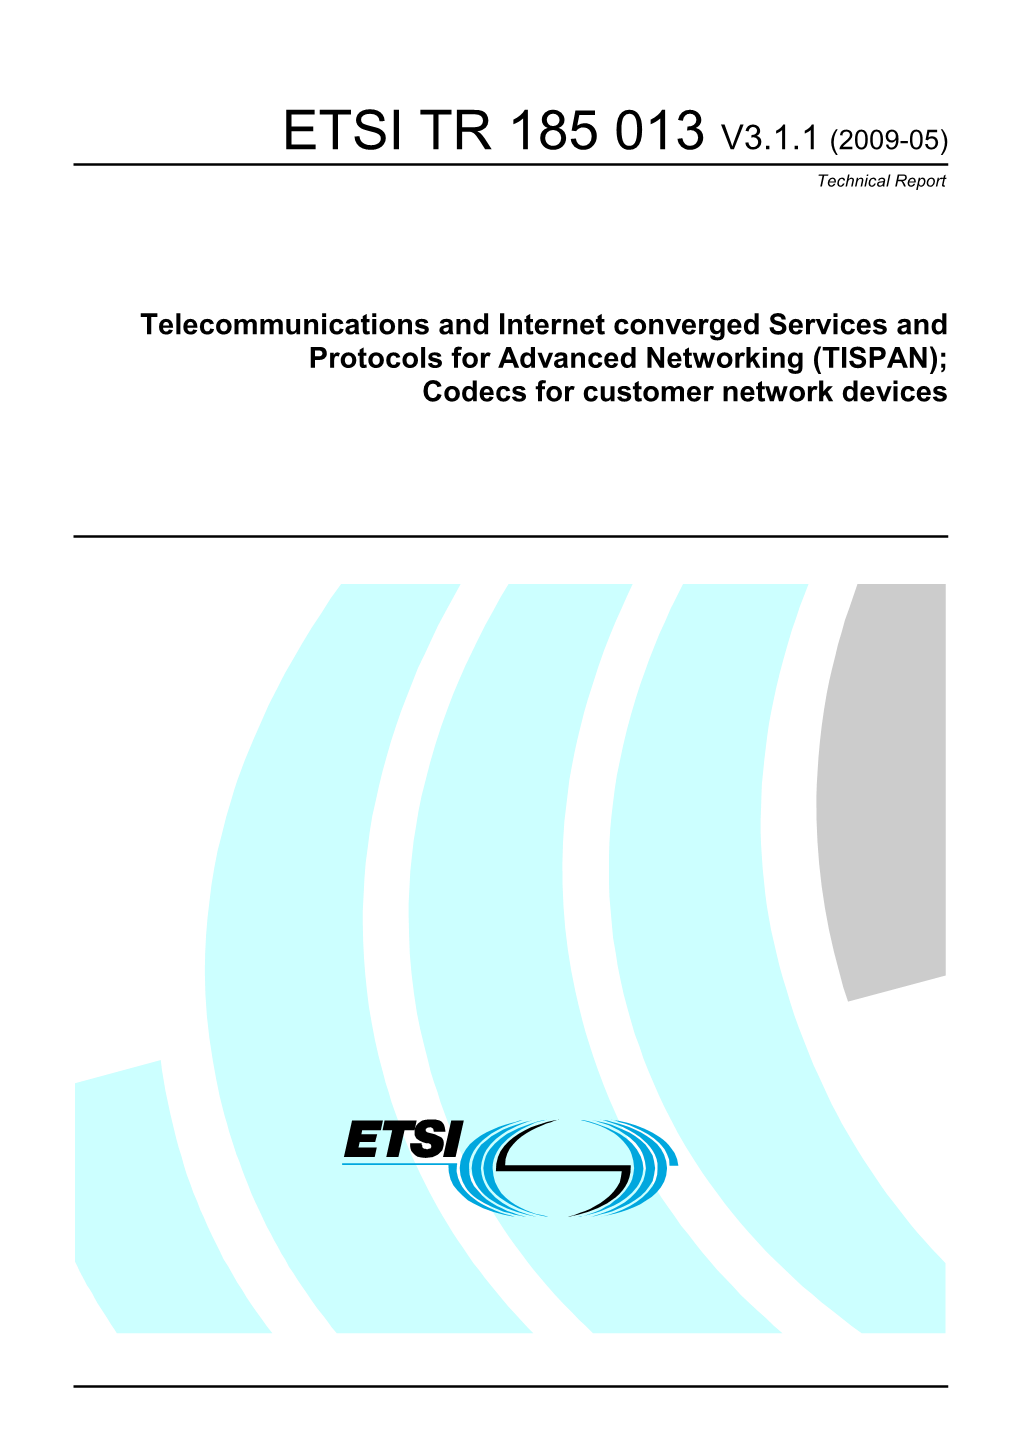 ETSI TR 185 013 V3.1.1 (2009-05) Technical Report